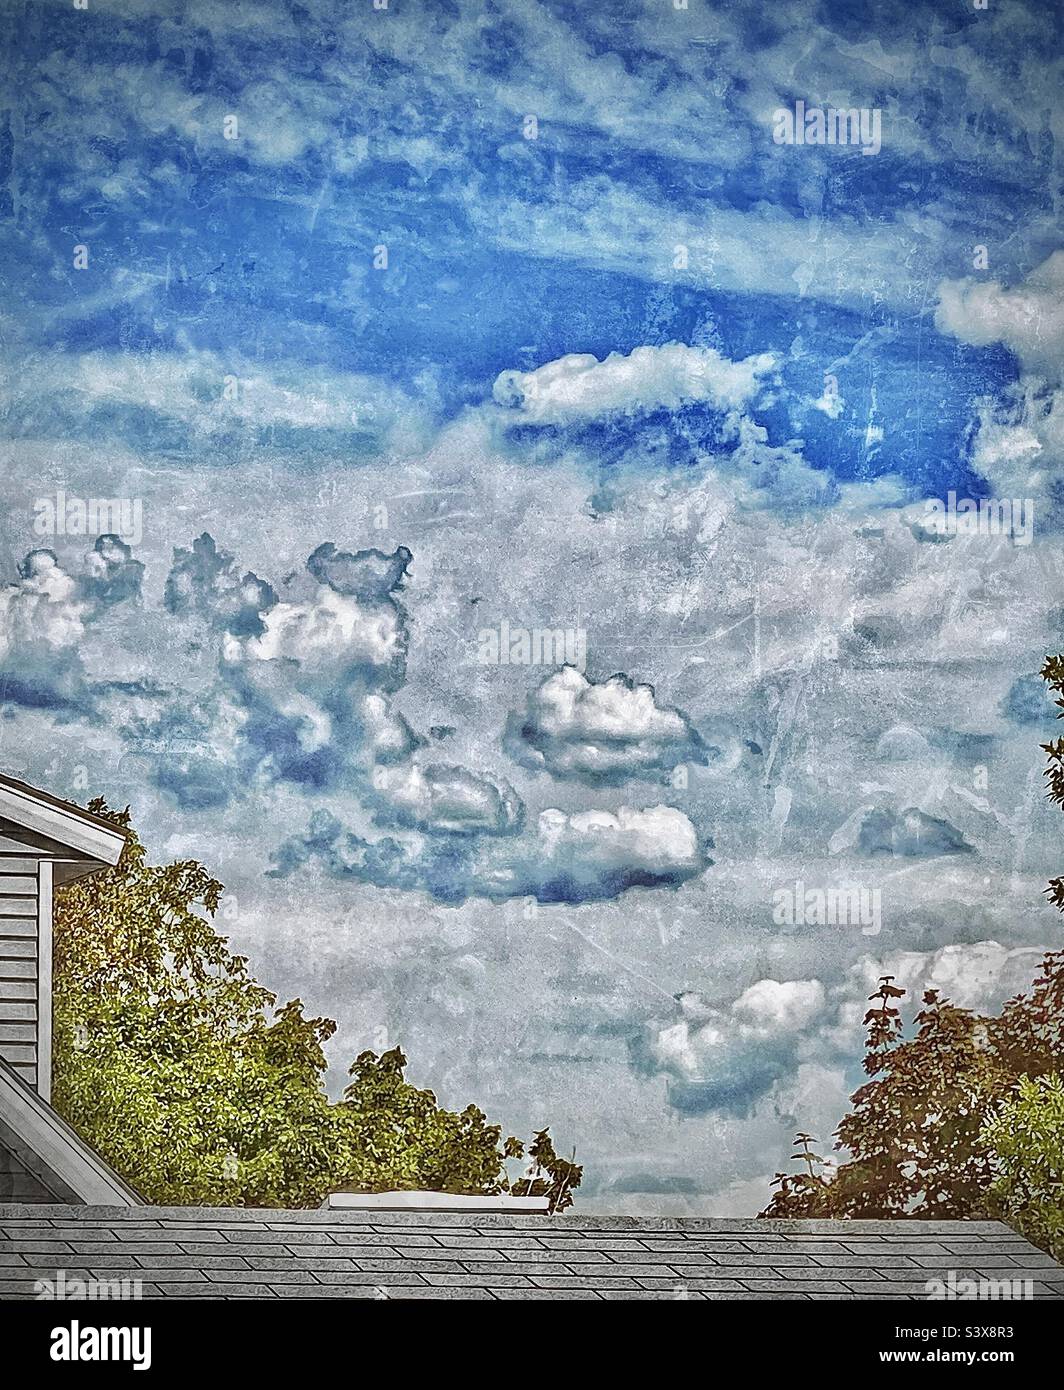 Eine grunzige Darstellung der Schönheit von Mutter Natur, die uns umgibt, der Bäume, des Himmels und der Wolken, eingerahmt von dem Menschen, den Dächern, Dachrinnen und Wänden unserer Häuser. Stockfoto